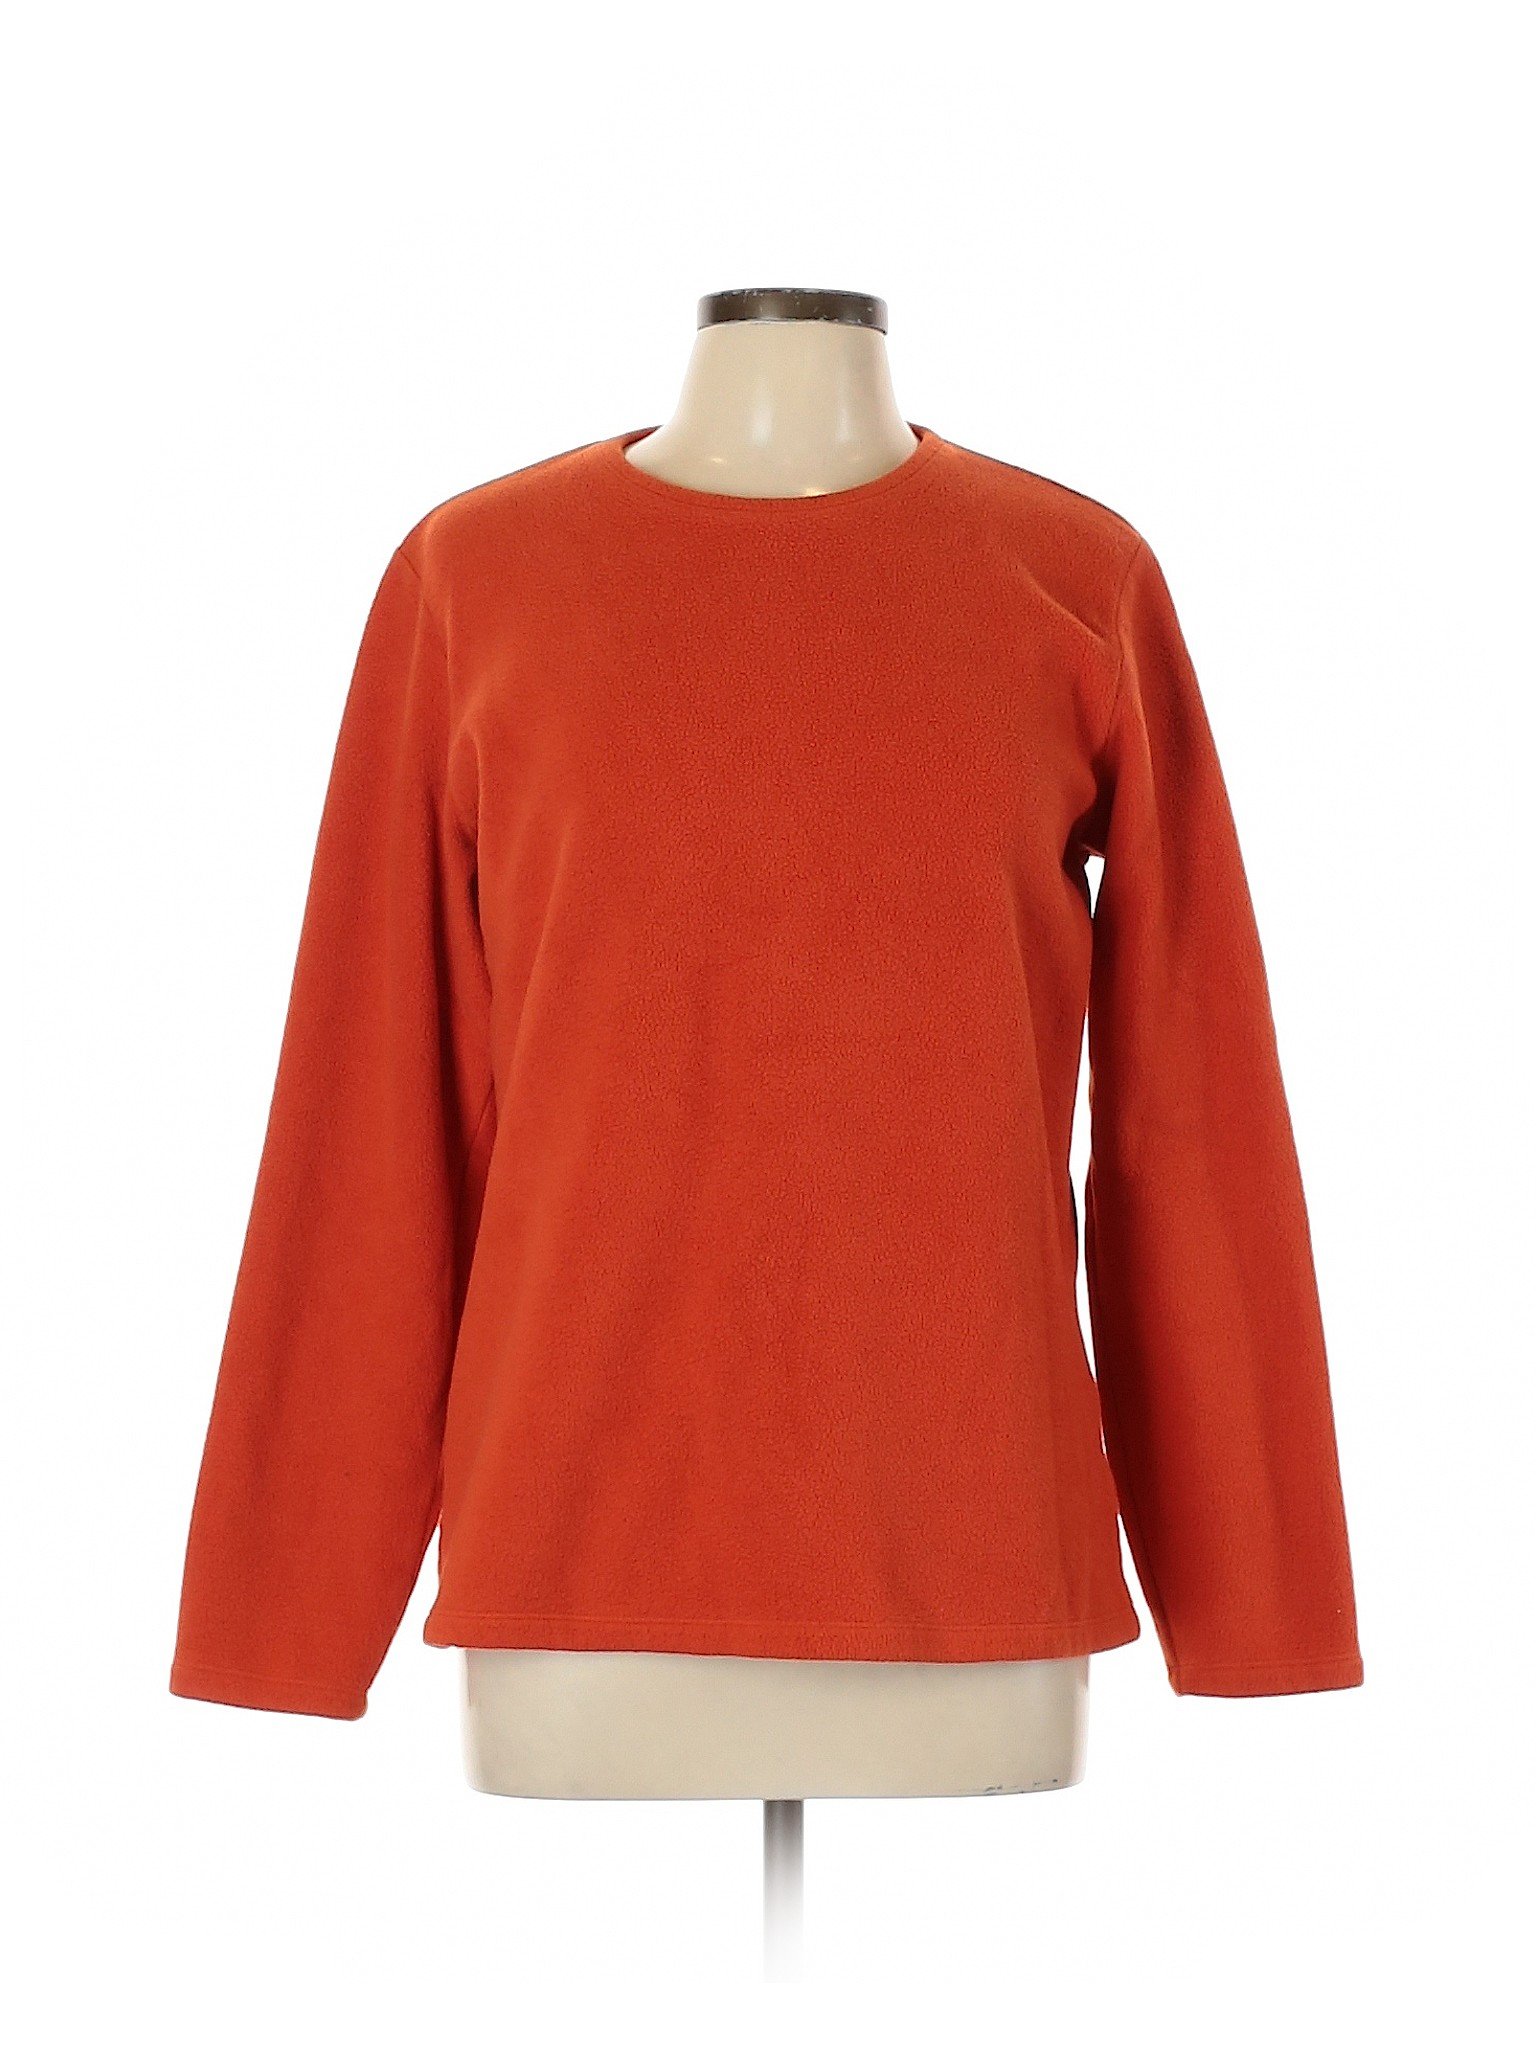 Lands' End Women Orange Fleece 10 | eBay